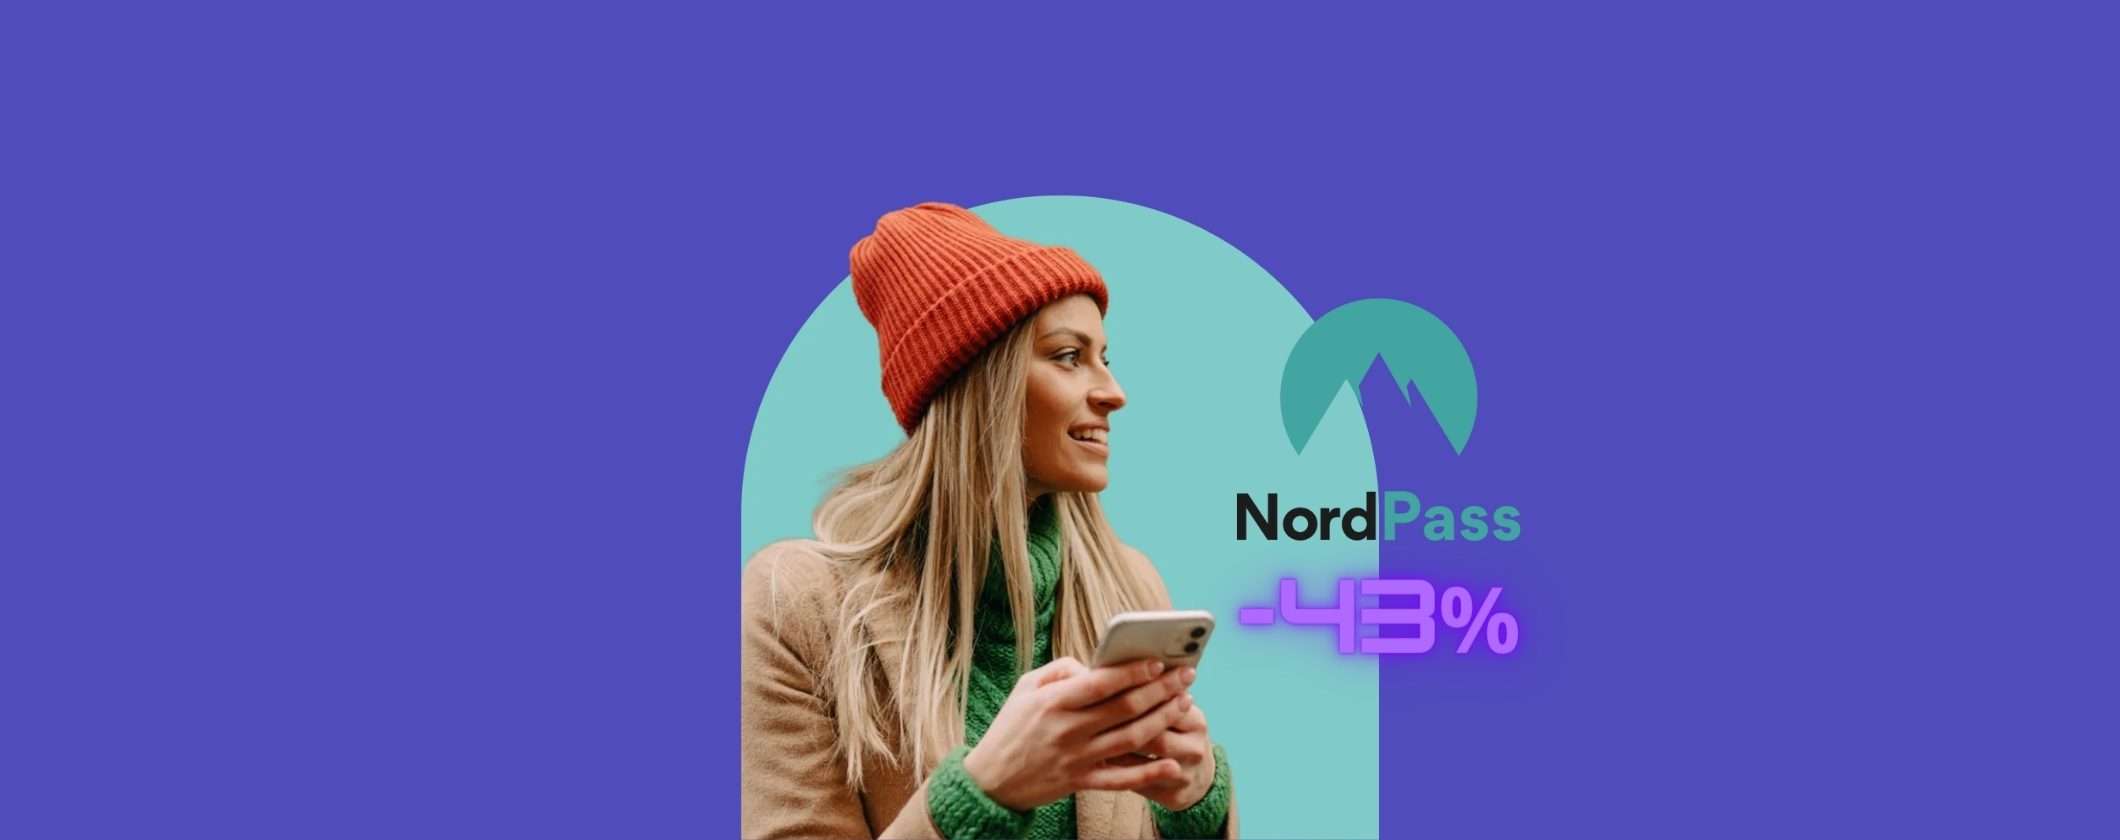 Proteggi le tue Password e Carte di Credito con NordPass (-43%)